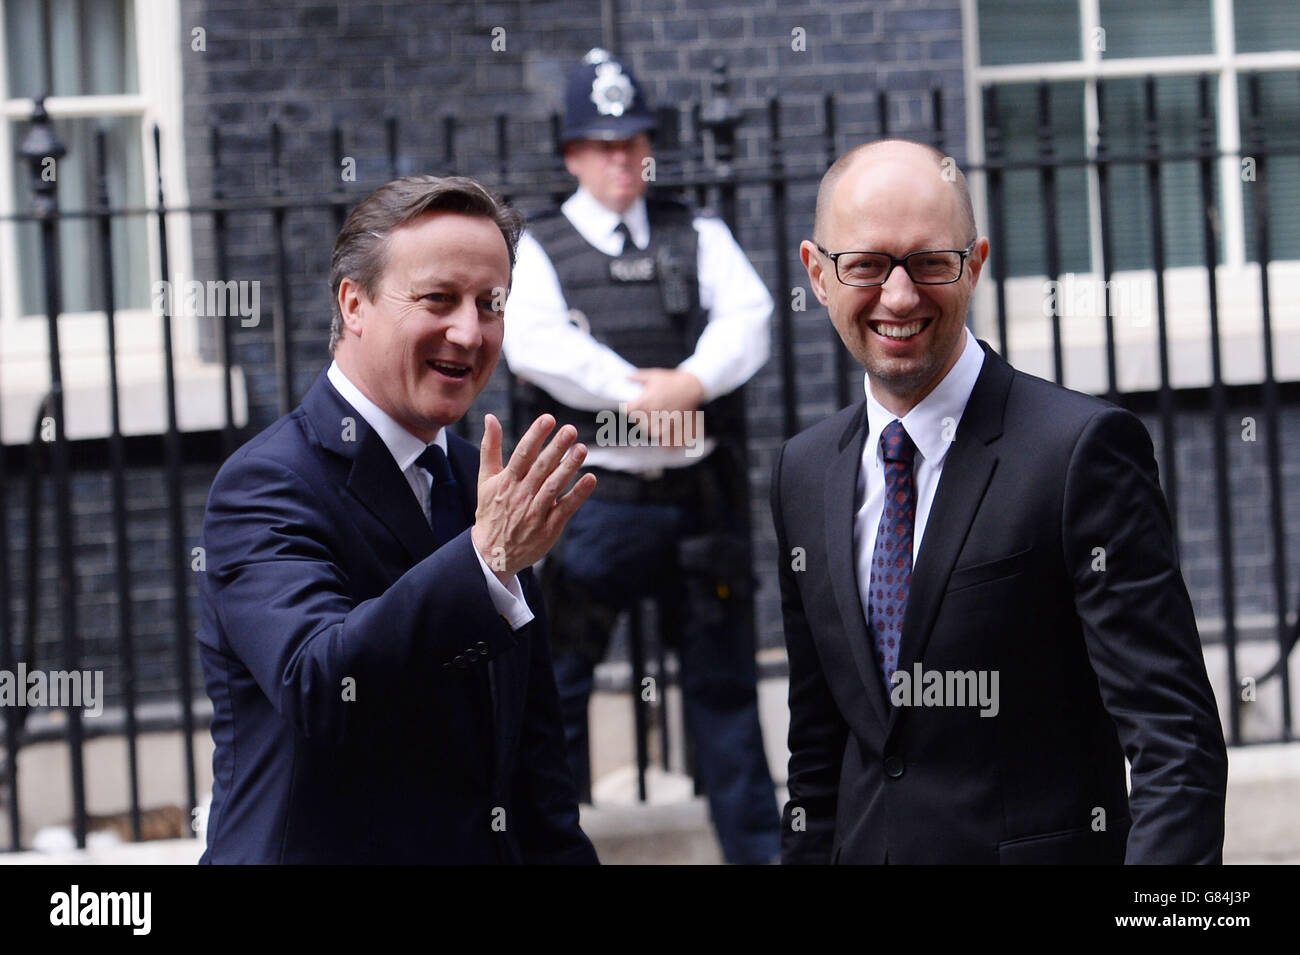 Le Premier ministre David Cameron rencontre son homologue ukrainien Arseniy Yatseniuk pour des entretiens au 10 Downing Street, dans le centre de Londres. Banque D'Images